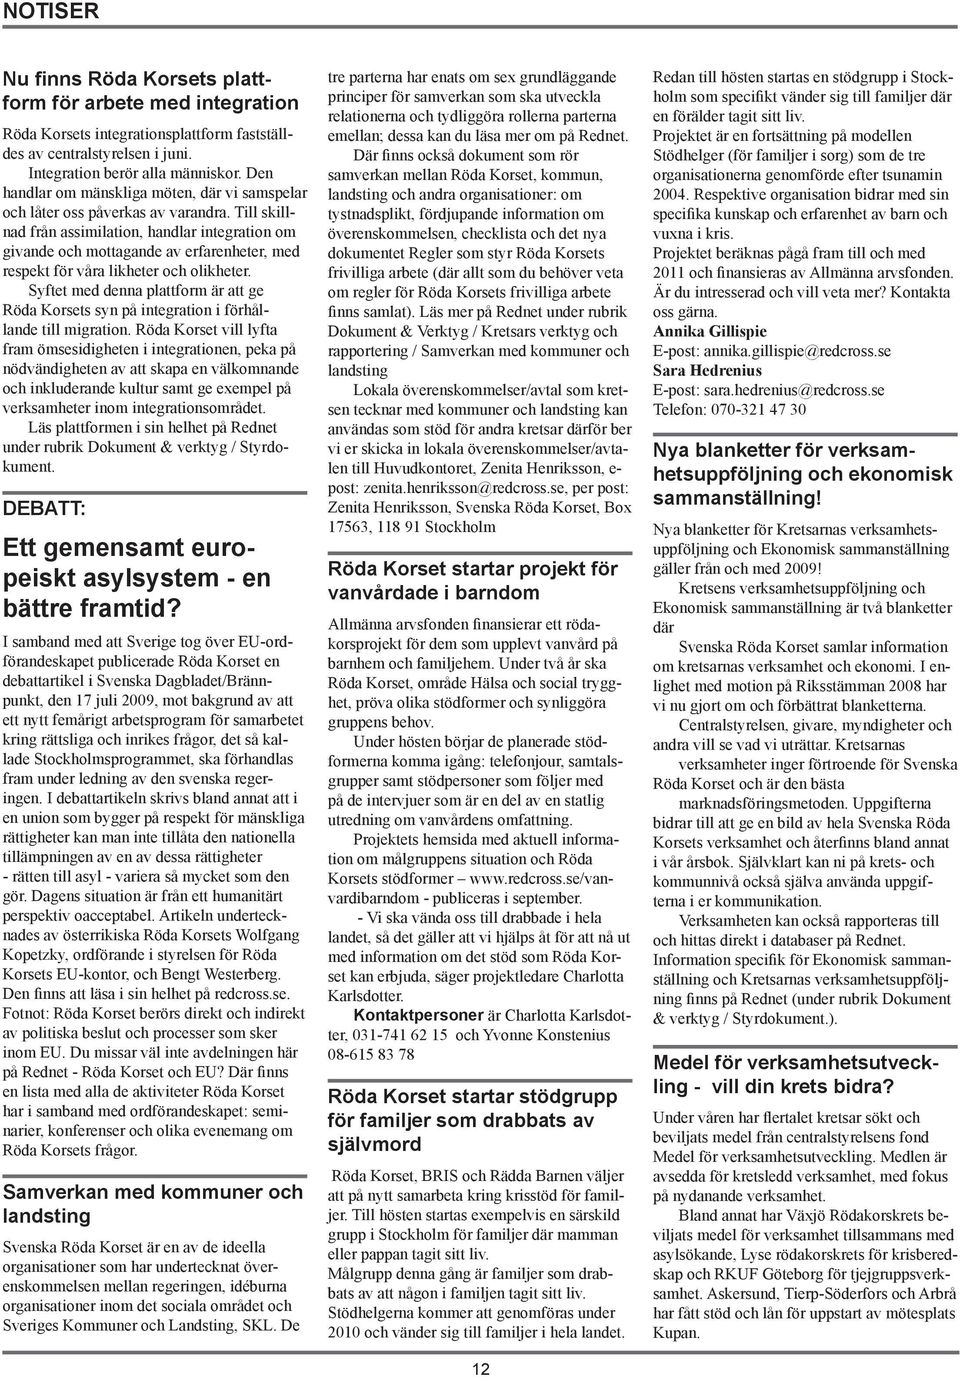 Rödakorsbladet. Informationsblad för och av dem som arbetar inom Röda Korset  i Sverige nr 3/09 - Region Stockholm - PDF Free Download